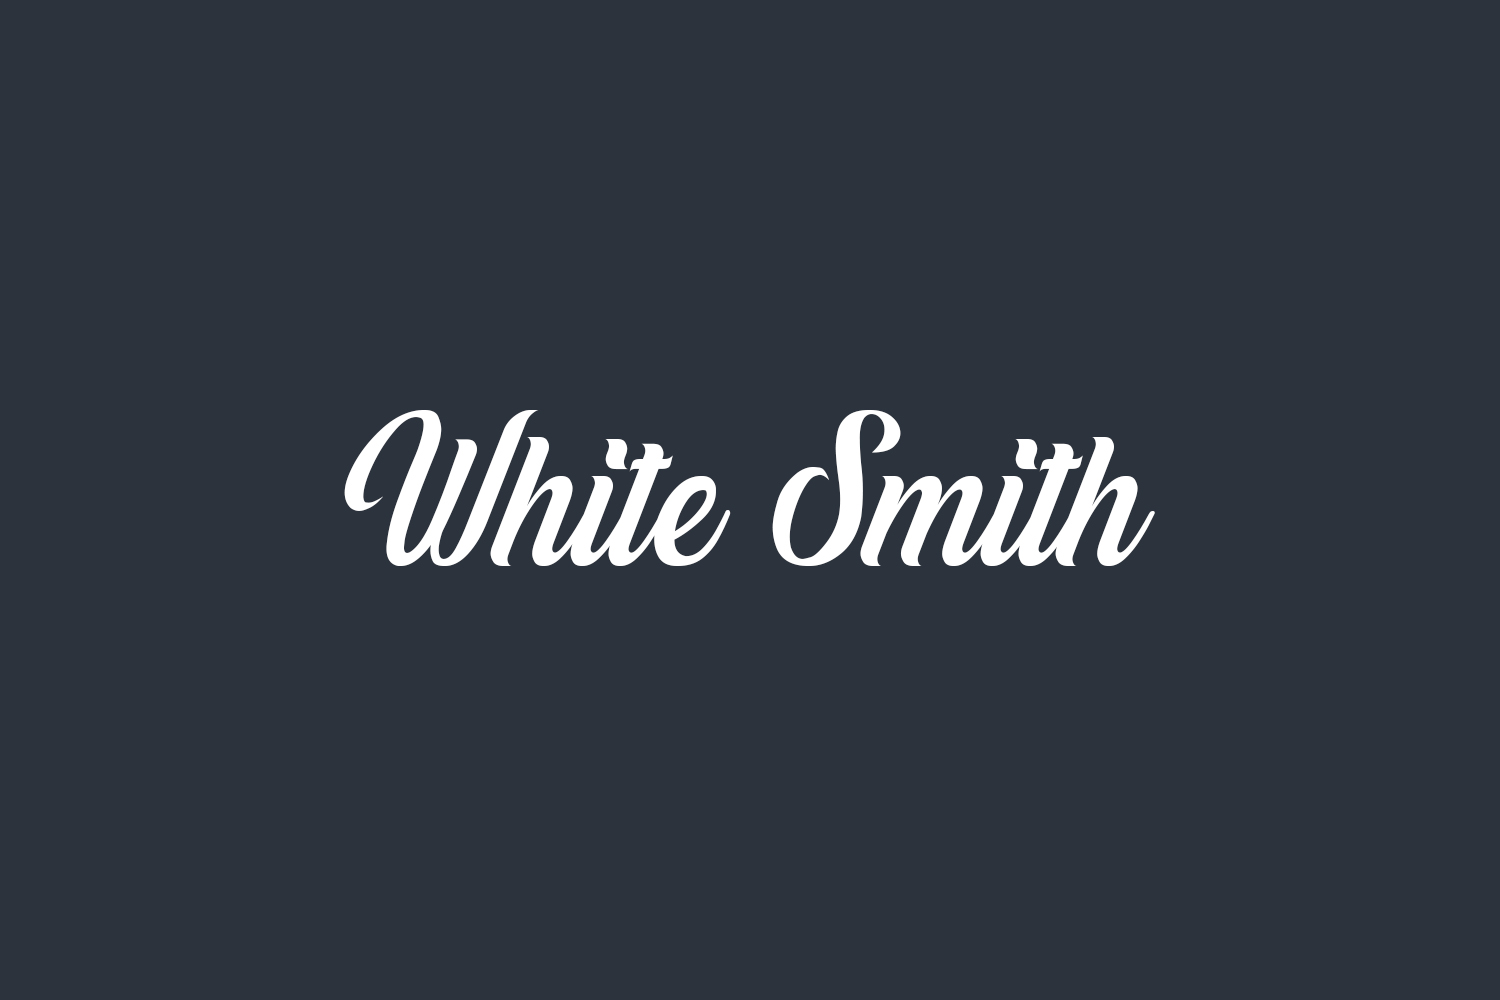 White Smith Free Font